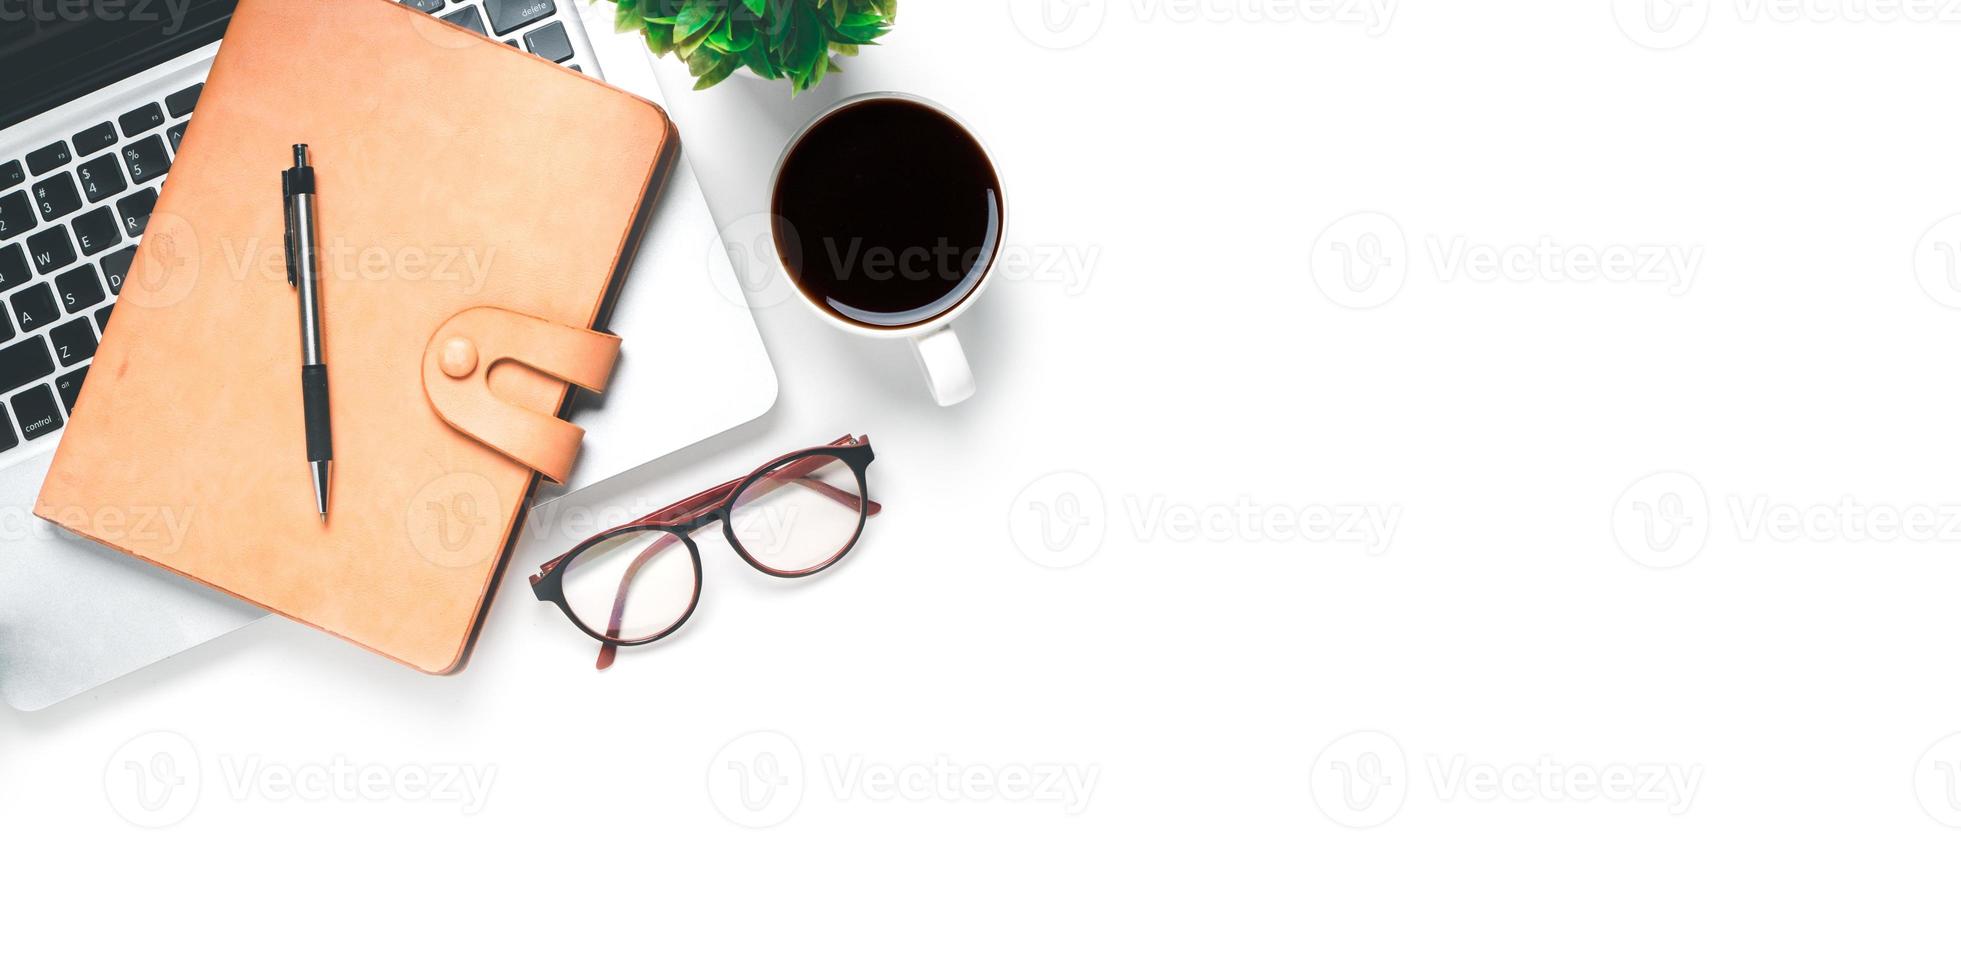 escritorio de oficina con computadora, bolígrafo, anteojos, mouse, cuaderno, taza de café sobre fondo blanco, vista superior con espacio para copiar, maqueta. foto